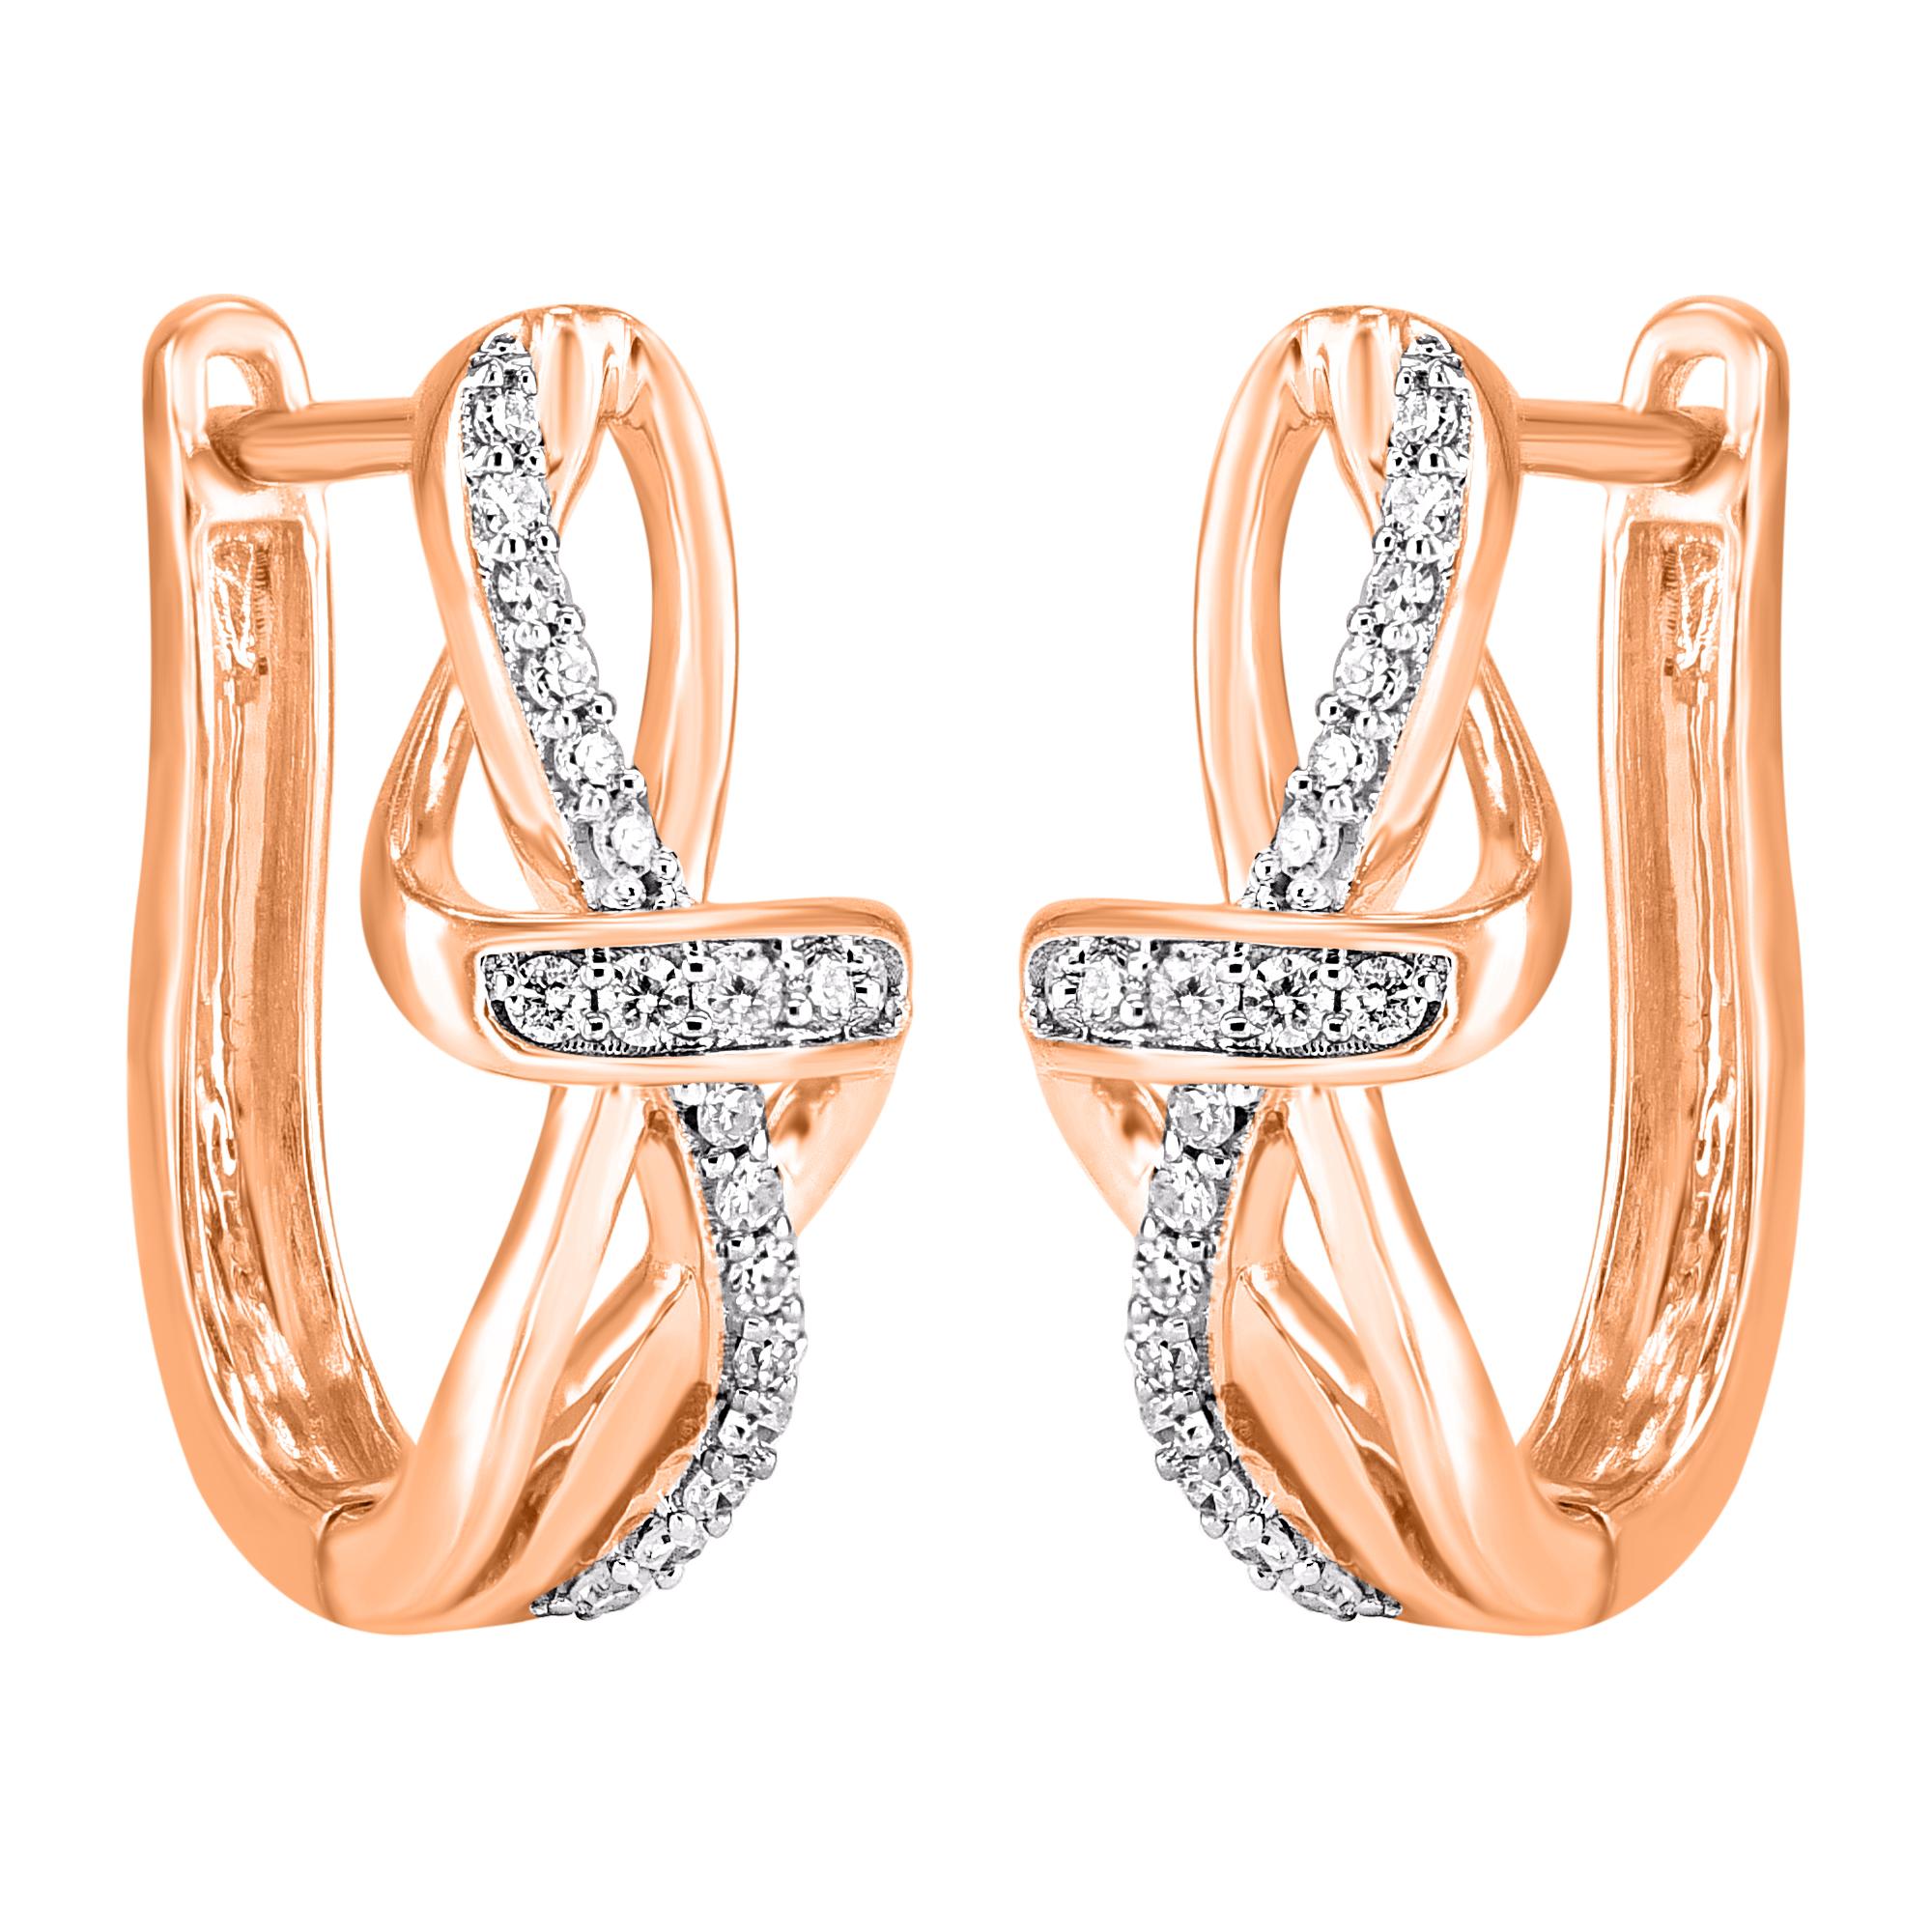 Diese diamantenen Ohrringe mit gedrehtem Knoten sind ein funkelndes Vergnügen und passen zu ihrer charmanten Ästhetik. Verziert mit 38 runden Diamanten in Zackenfassung und mit der Farbe H-I und der Reinheit I2. Er besticht mit 0,20 Karat und lässt